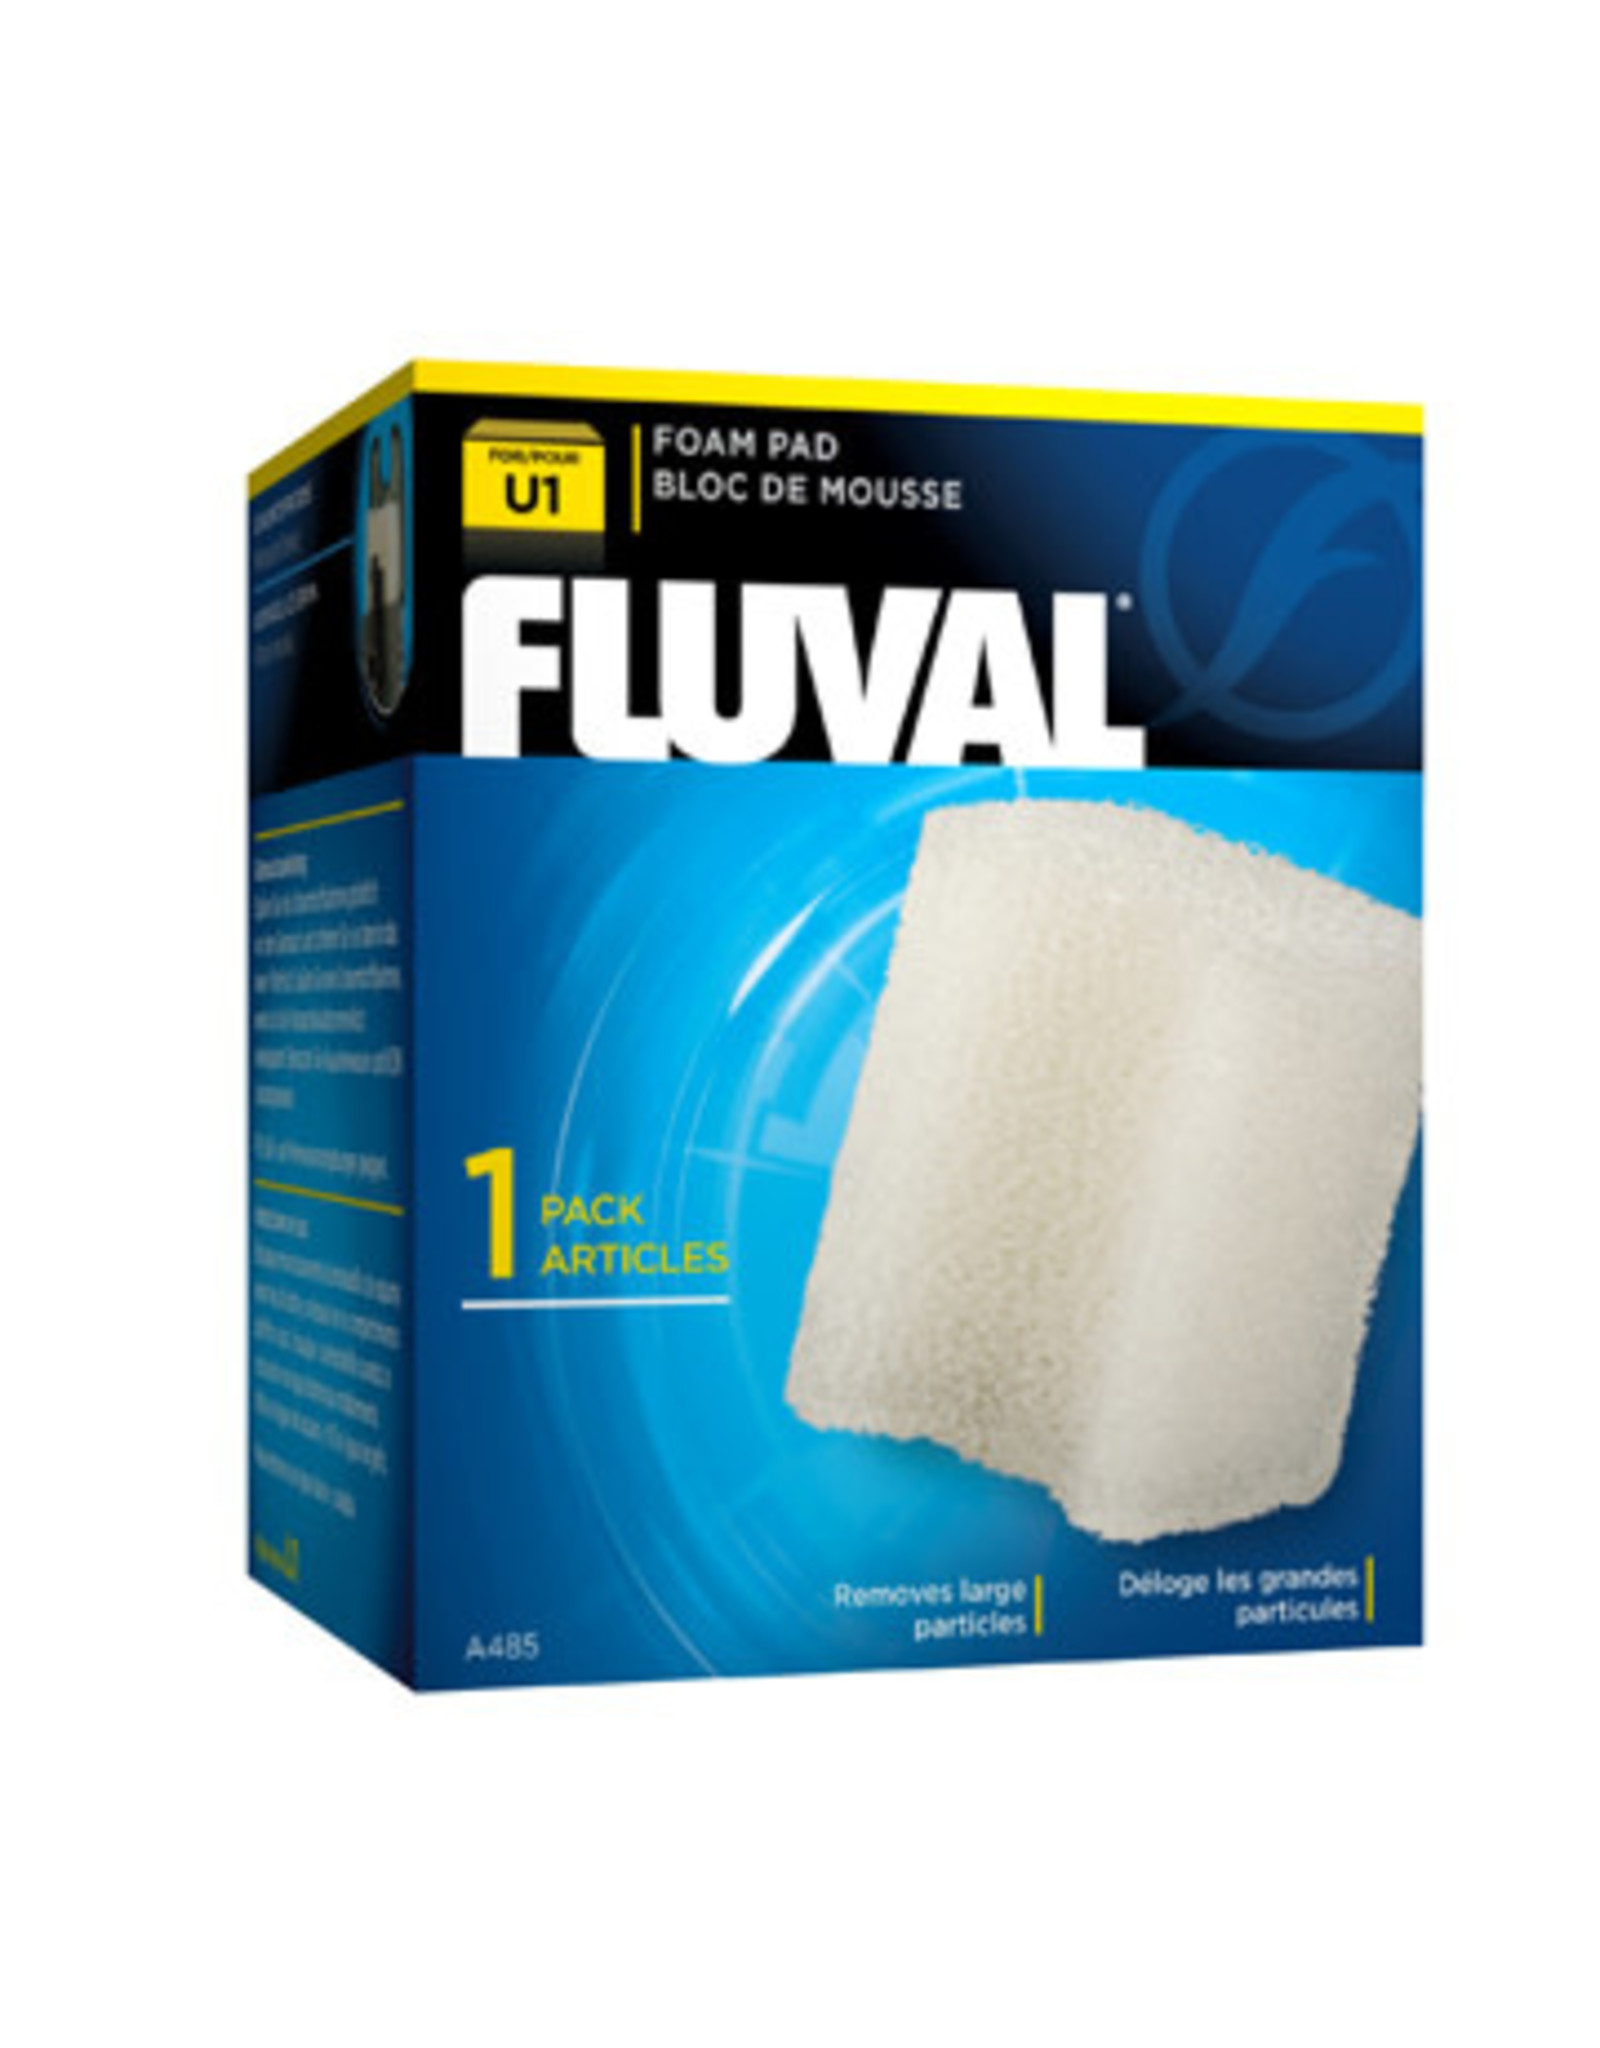 Fluval Fluval "U1" Foam Pad